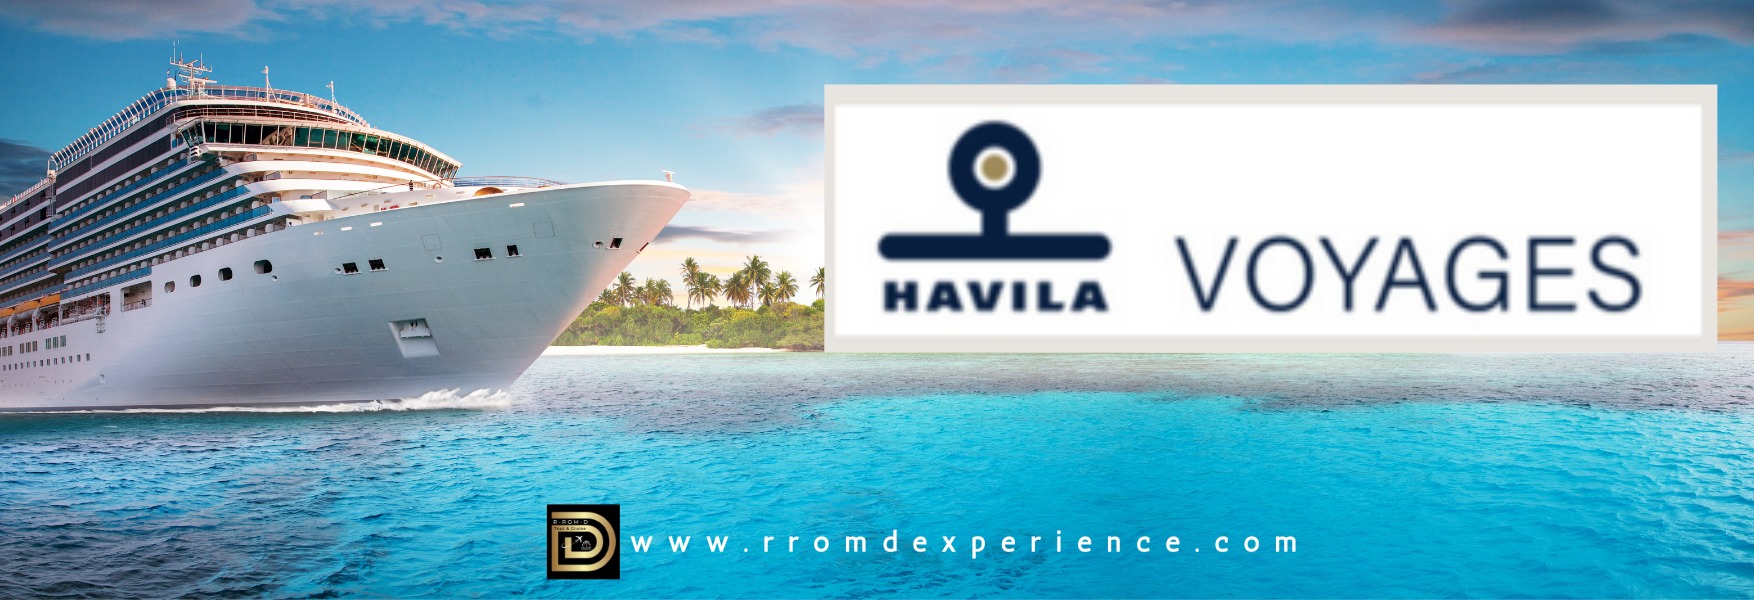 Havila Voyage